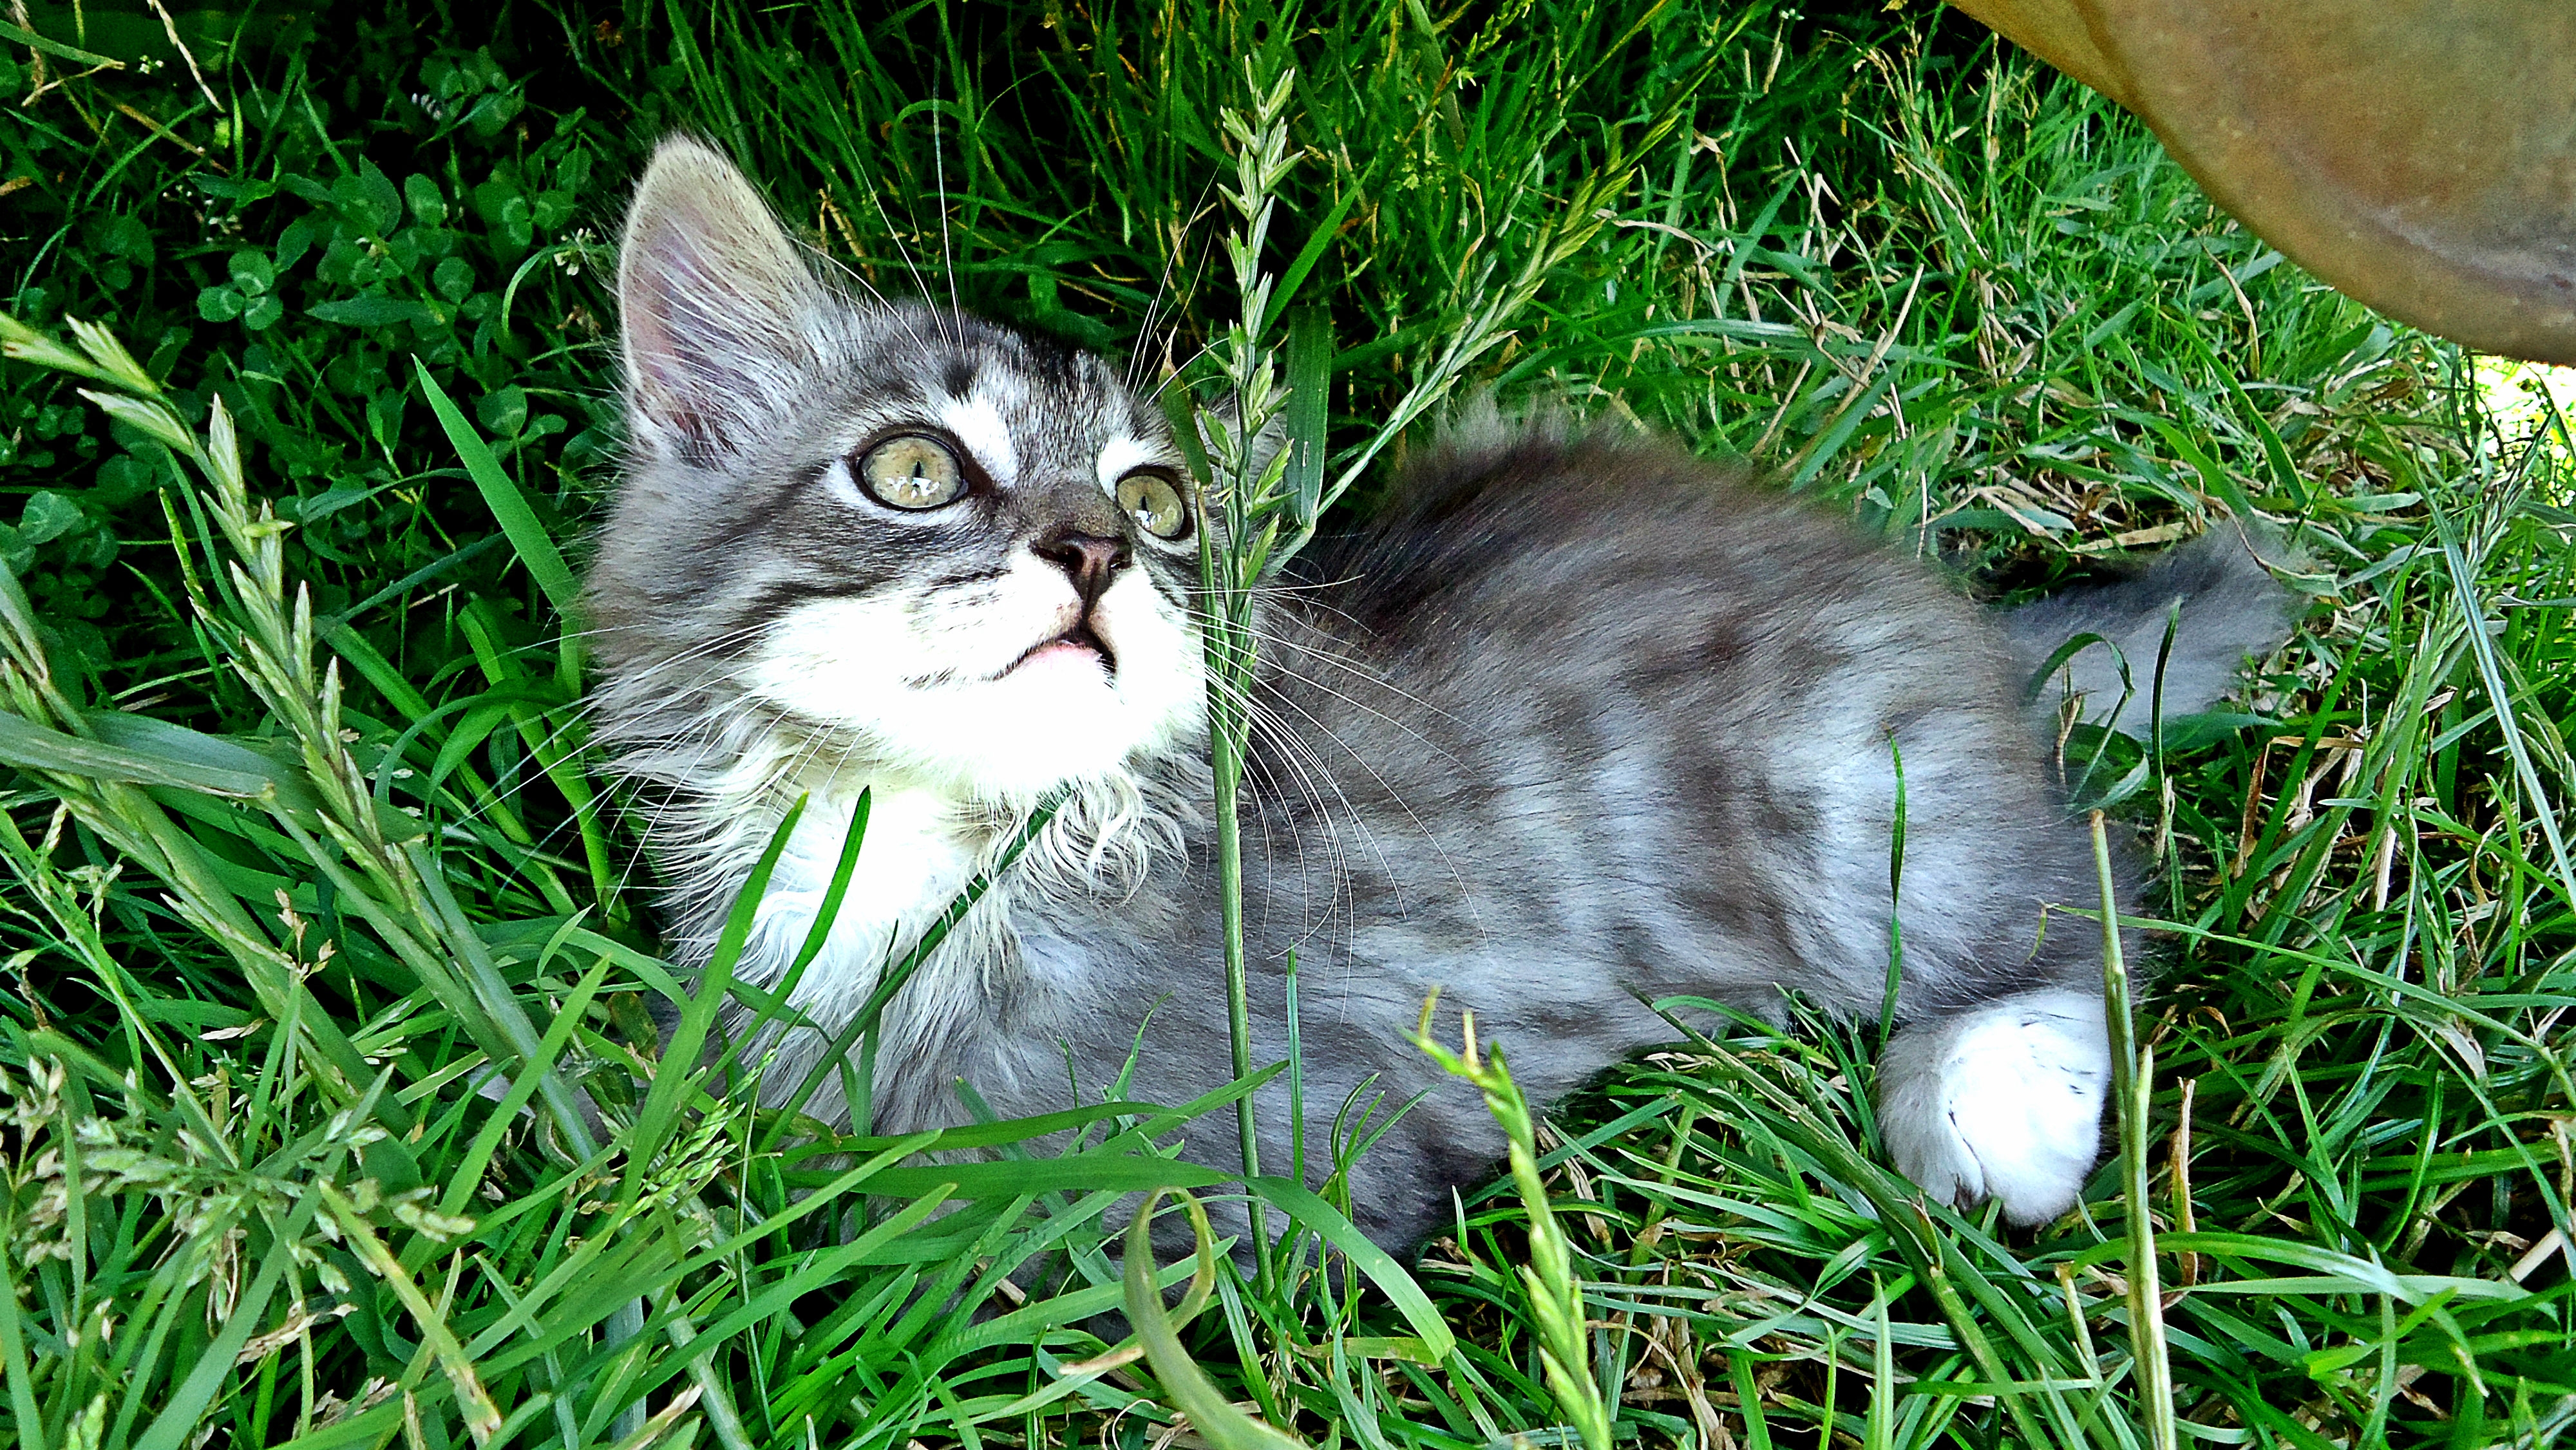 animals, grass, kitty, kitten, playful, mindfulness, attentiveness